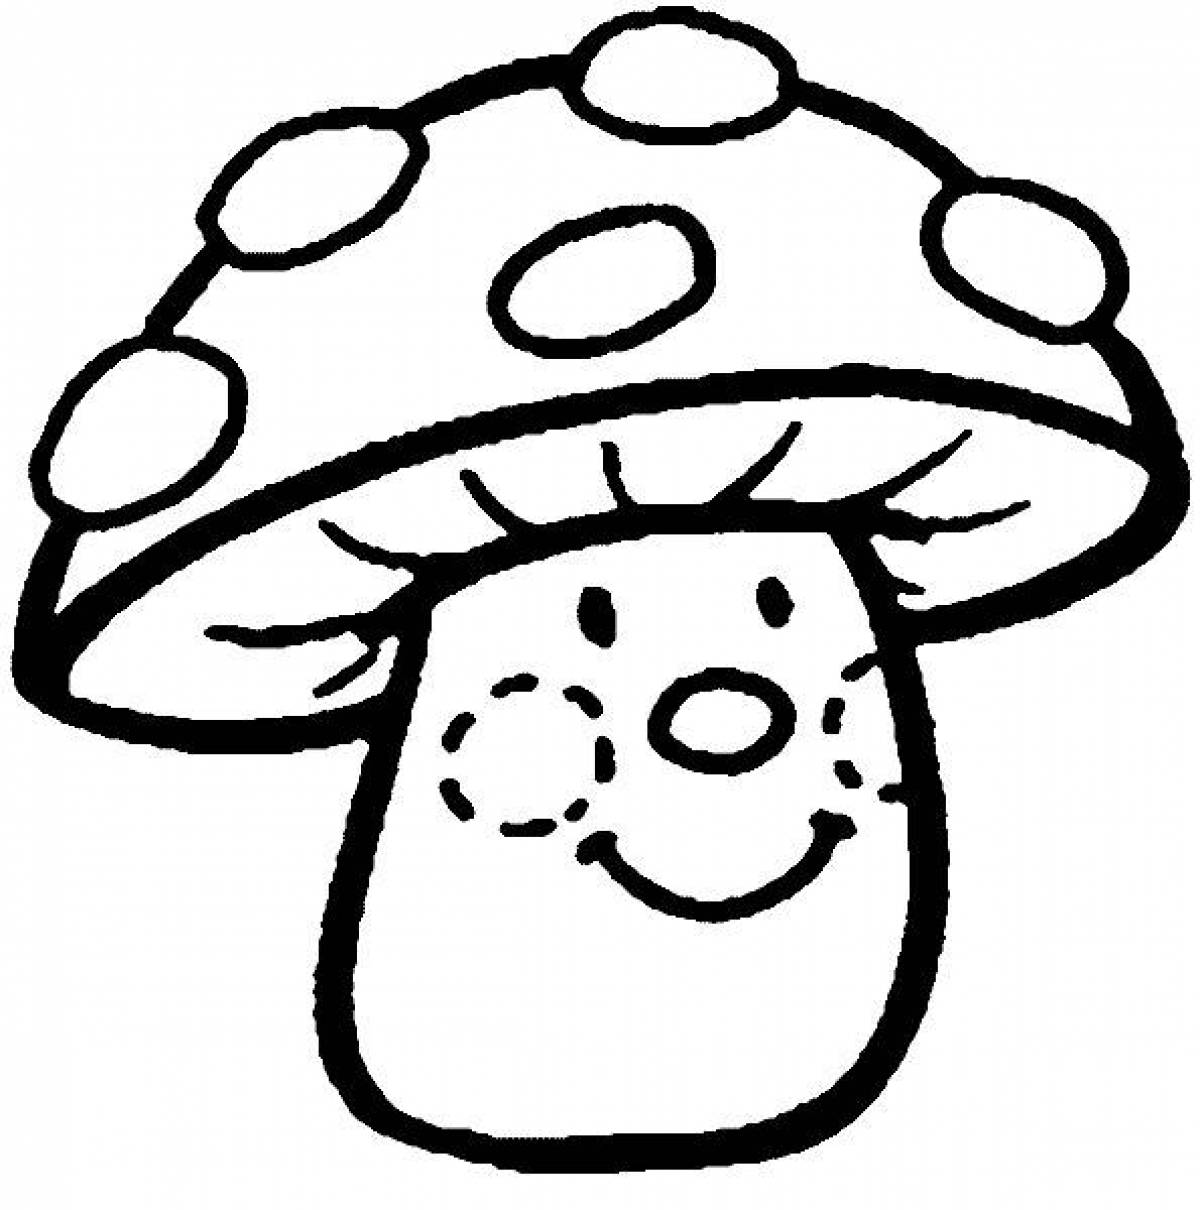 Coloring book joyful mushroom